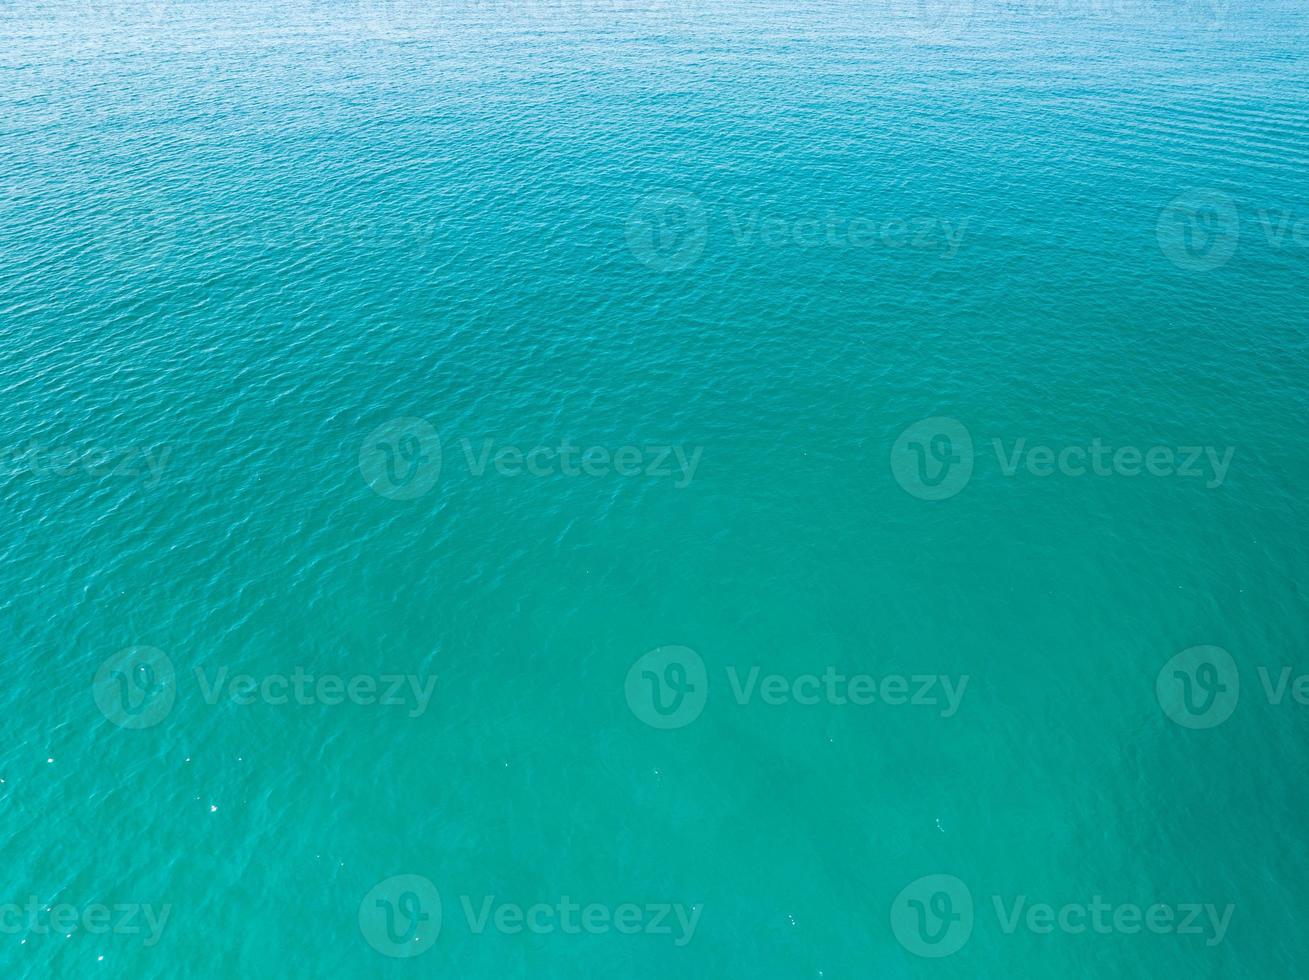 vista aérea de la superficie del mar, foto a vista de pájaro de las olas azules y la textura de la superficie del agua, fondo marino turquesa, hermosa naturaleza increíble vista del fondo del mar